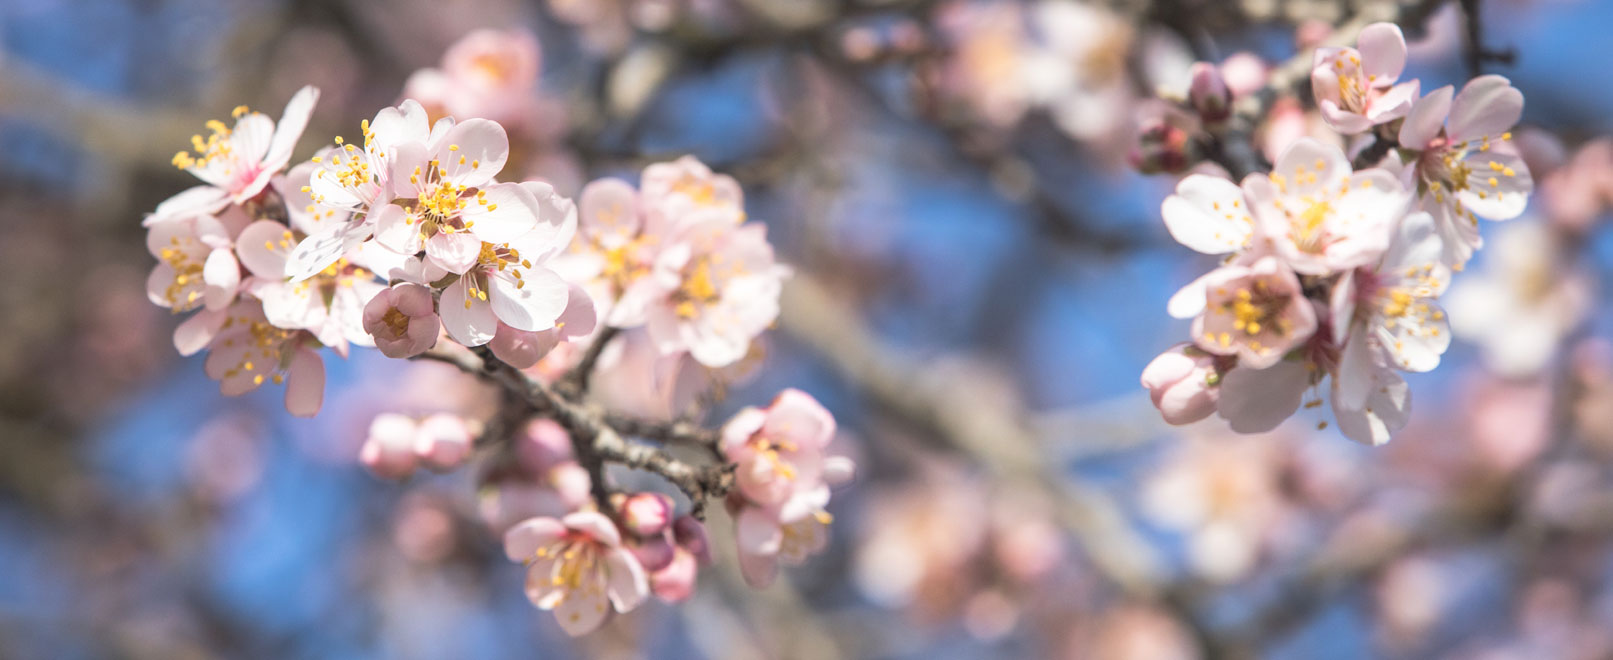 Almond trees-vaucluse-©Kessler